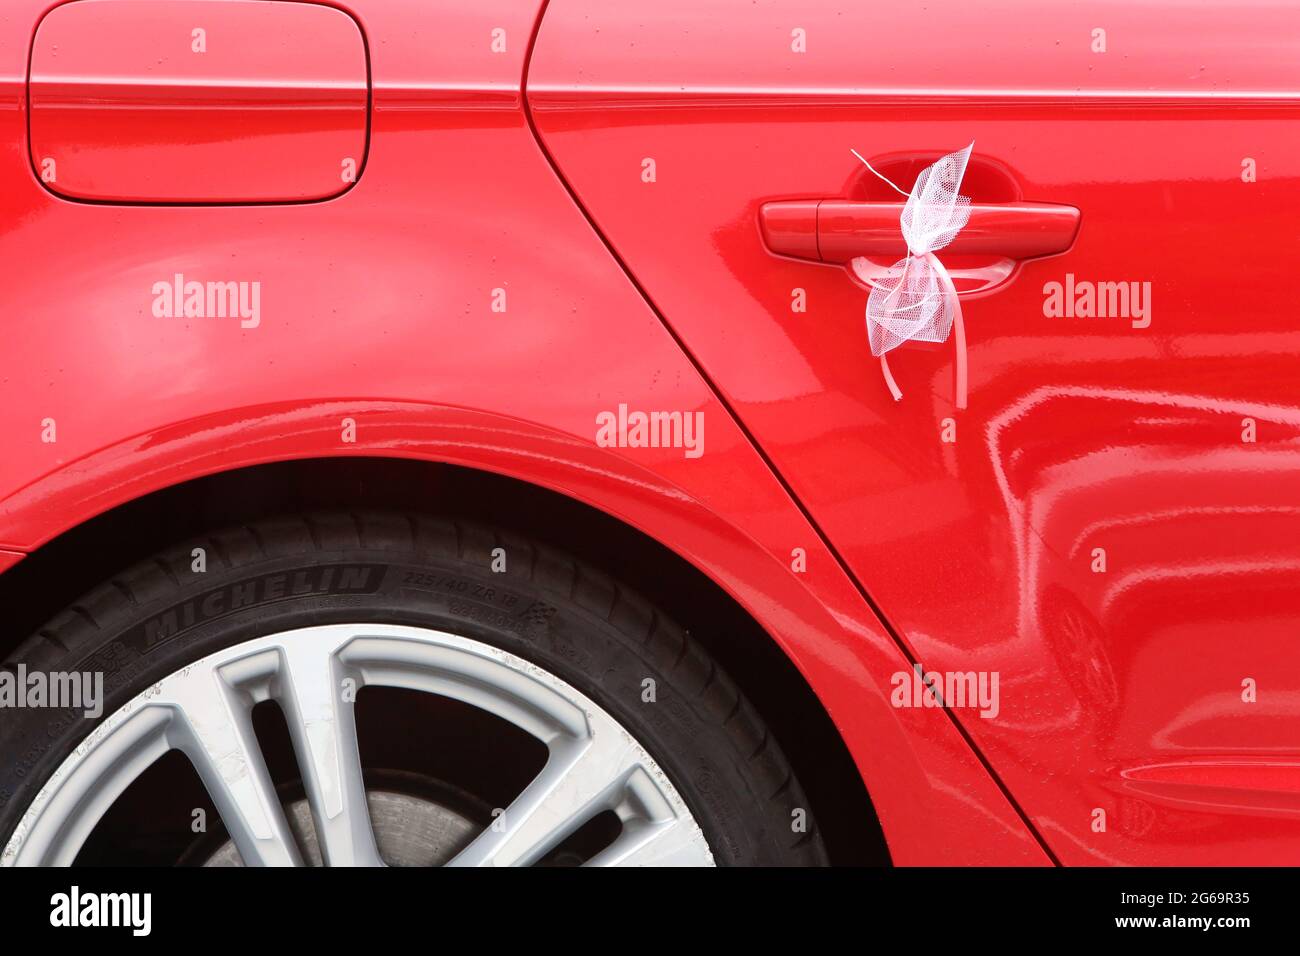 Nœud de mariage sur un véhicule rouge. Saint-Gervais-les-Bains. Alta Savoia. Auvergne-Rhône-Alpes. Francia. Foto Stock